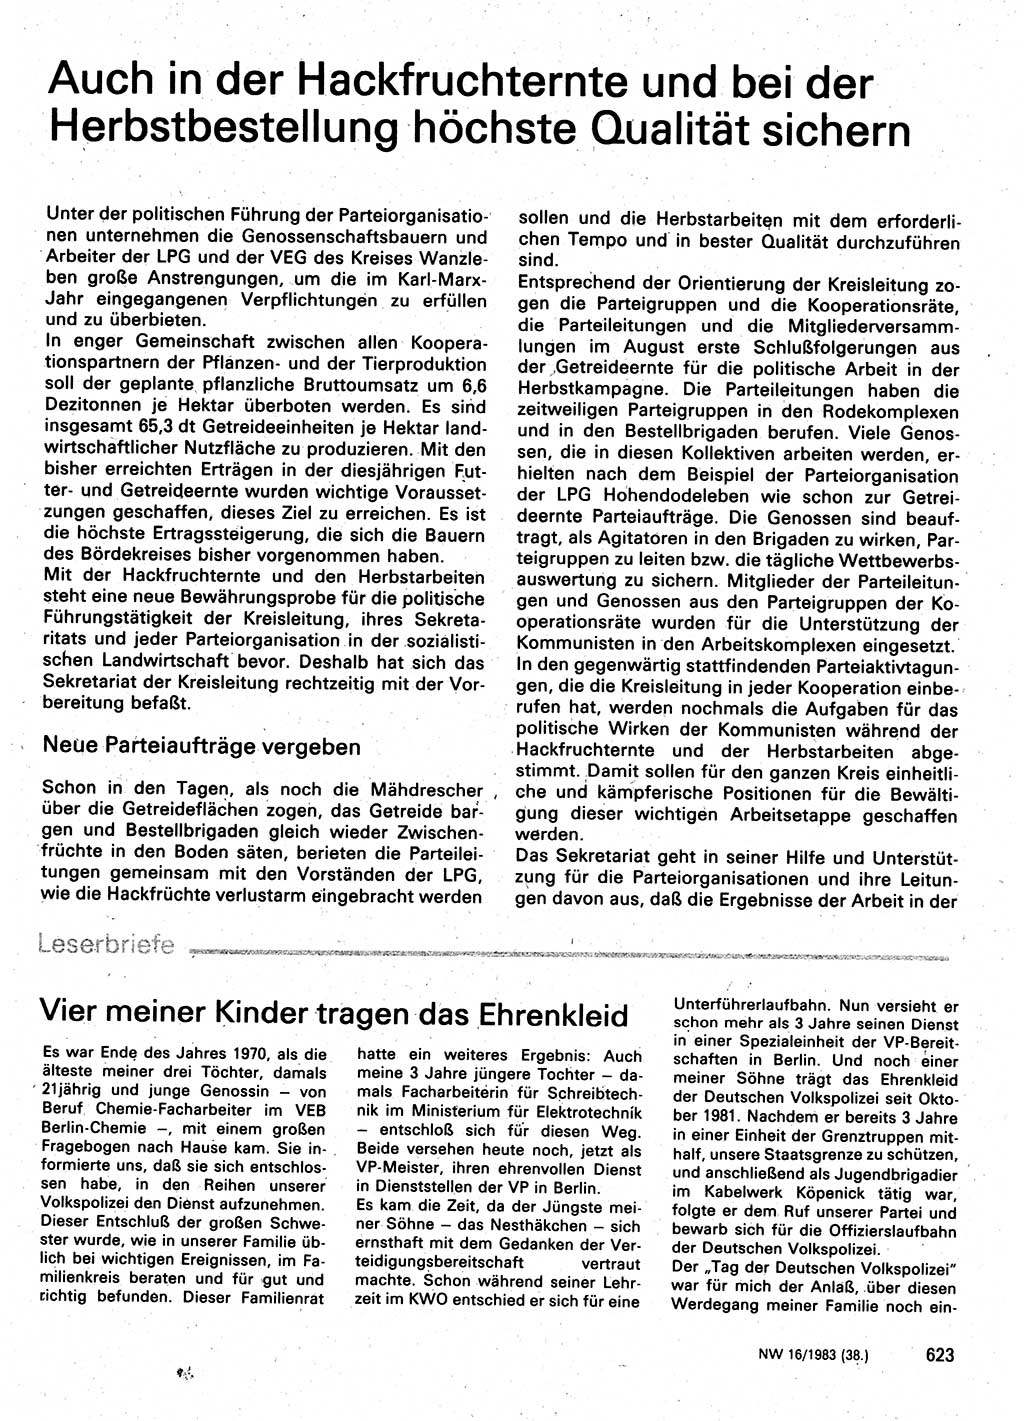 Neuer Weg (NW), Organ des Zentralkomitees (ZK) der SED (Sozialistische Einheitspartei Deutschlands) für Fragen des Parteilebens, 38. Jahrgang [Deutsche Demokratische Republik (DDR)] 1983, Seite 623 (NW ZK SED DDR 1983, S. 623)